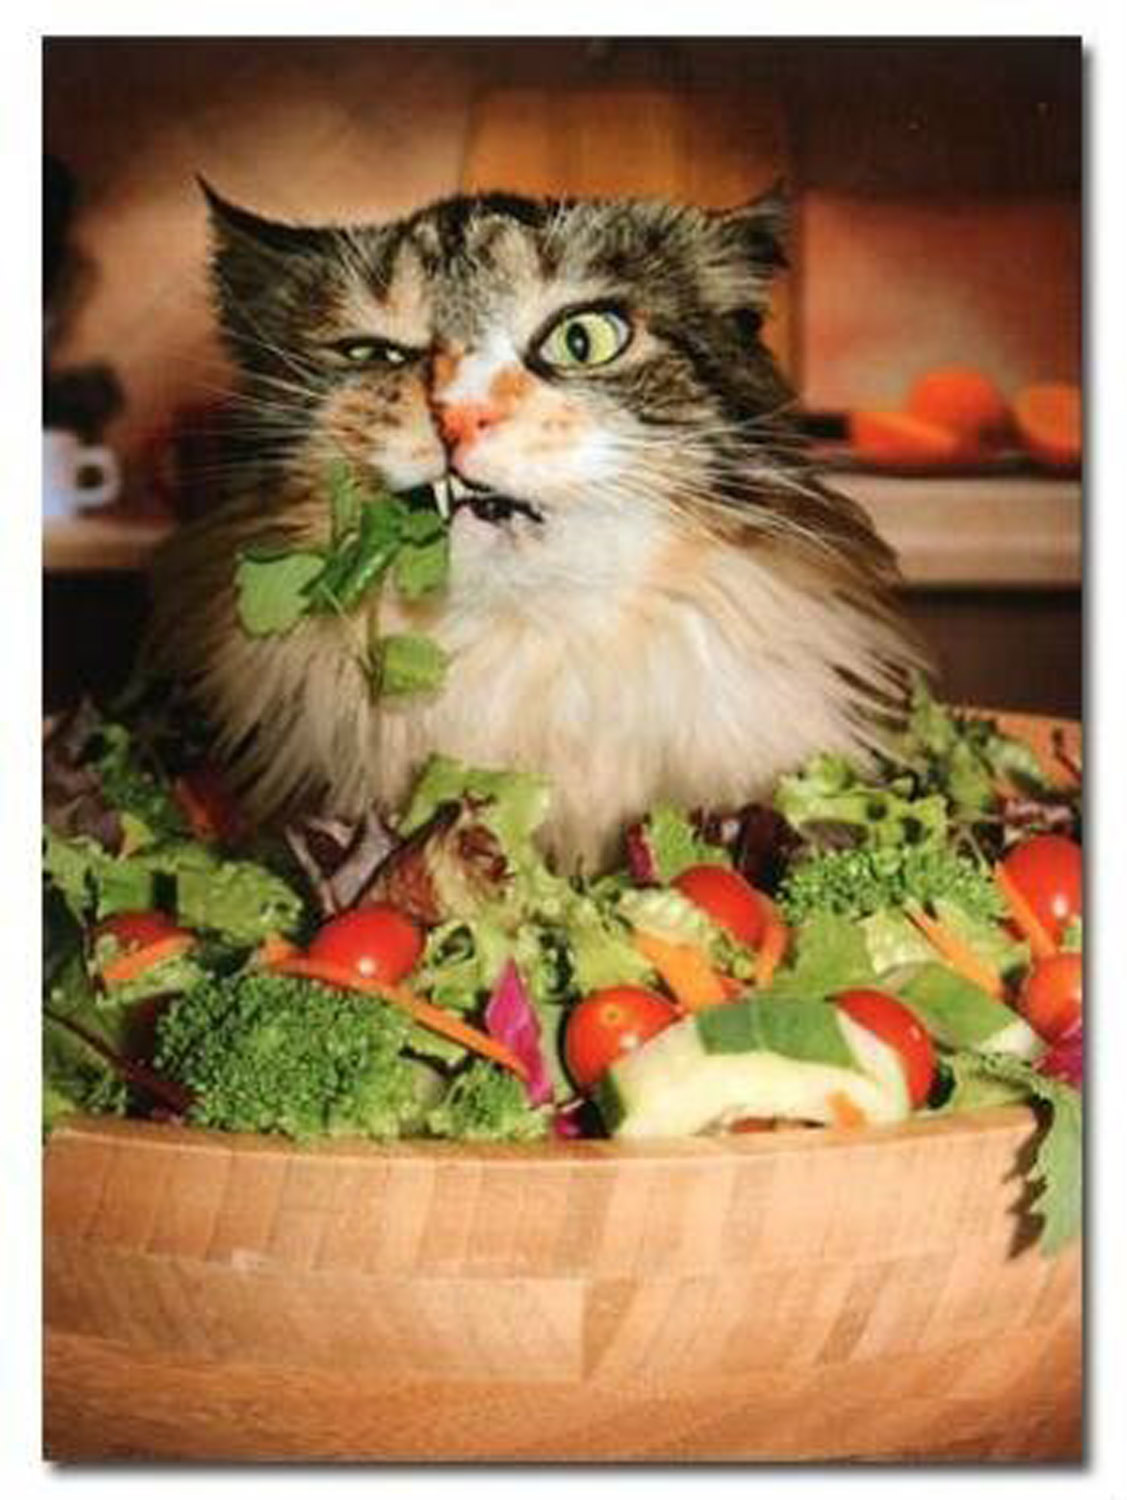 Saladcat